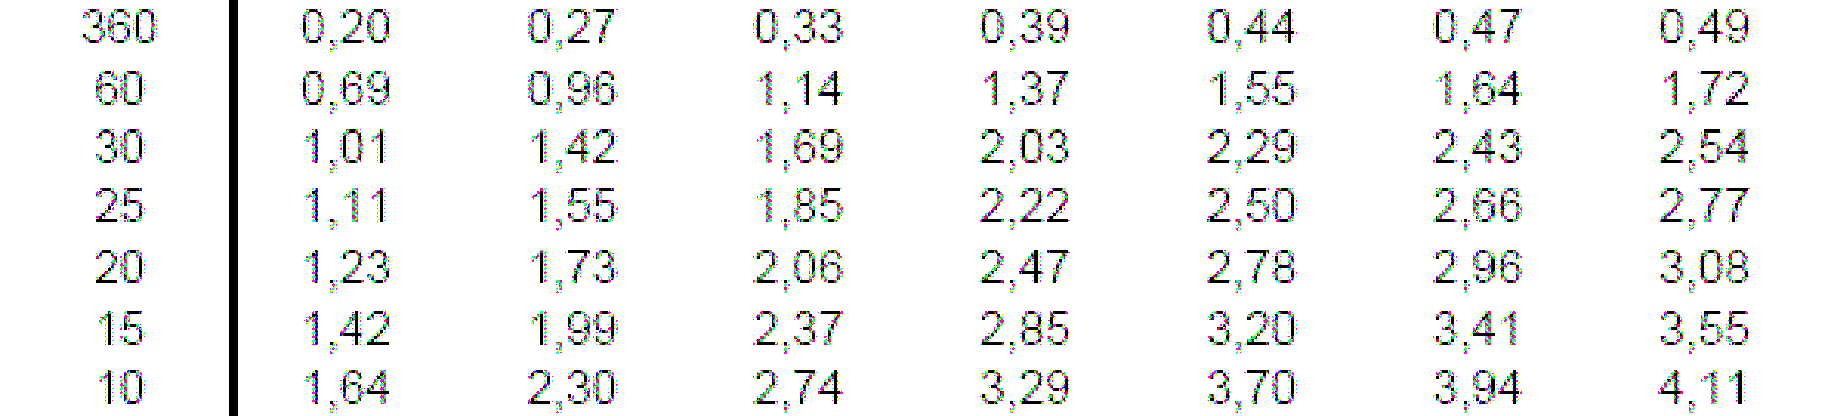 Tabela 01 Precipitações máximas anuais de 1 dia (em mm) associadas a diferentes períodos de retorno Tabela 02 Precipitações máximas anuais (em mm) associadas a diferentes períodos de retorno e